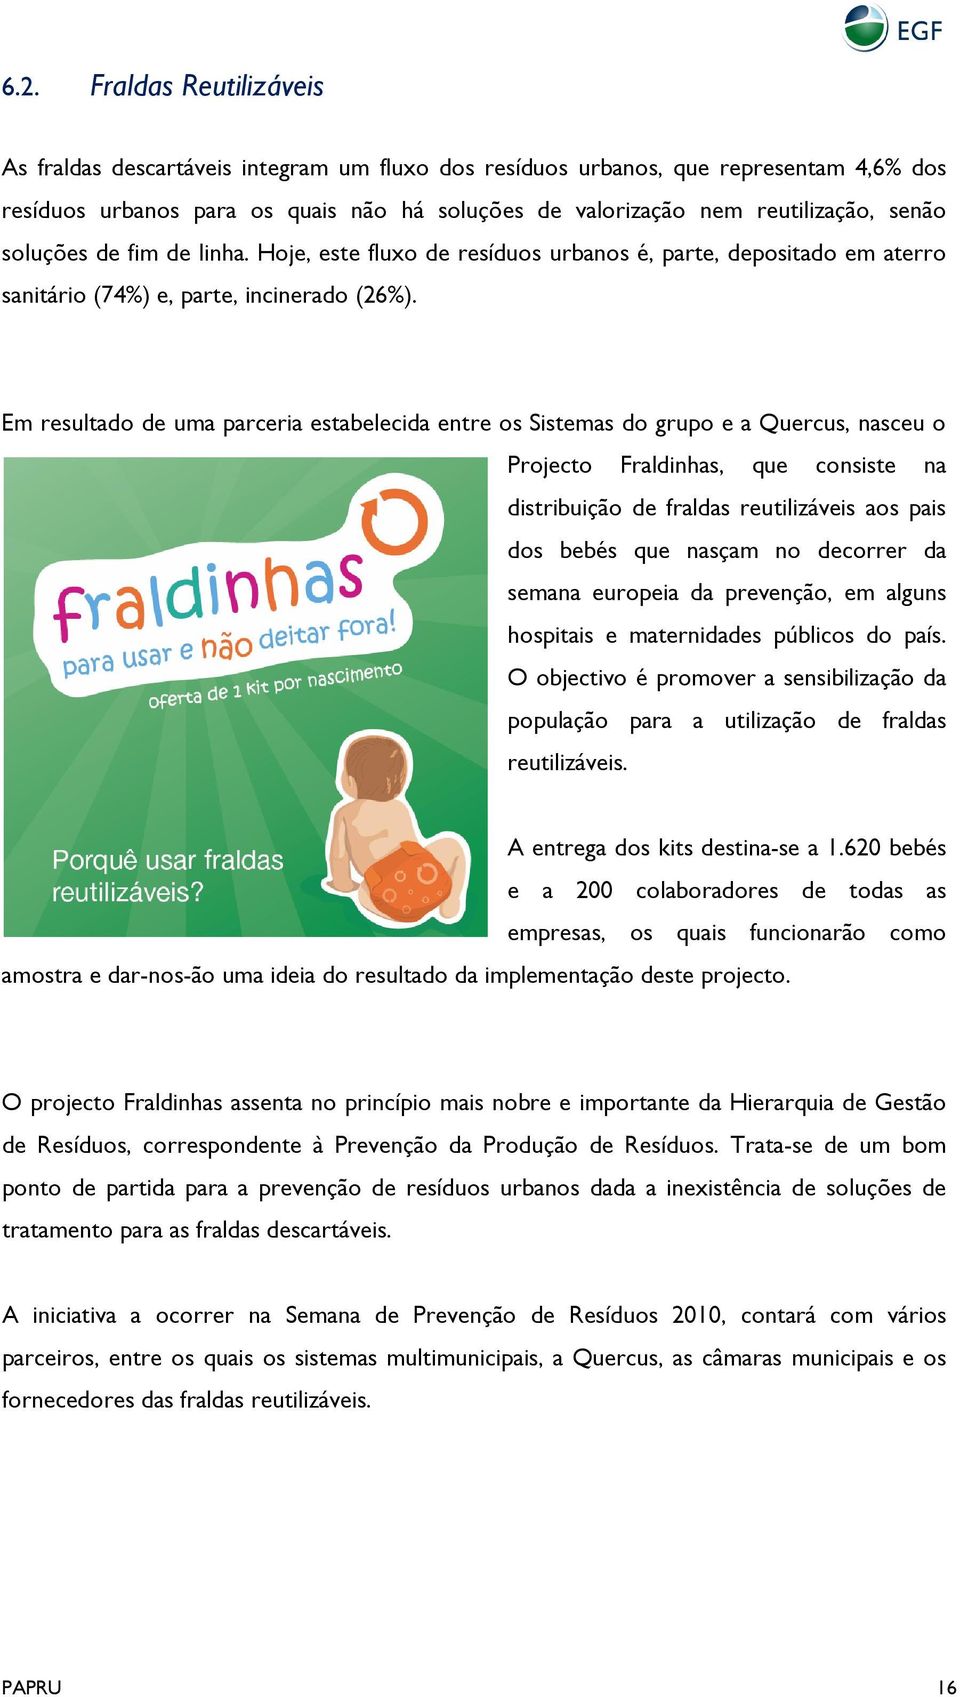 Em resultado de uma parceria estabelecida entre os Sistemas do grupo e a Quercus, nasceu o Projecto Fraldinhas, que consiste na distribuição de fraldas reutilizáveis aos pais dos bebés que nasçam no